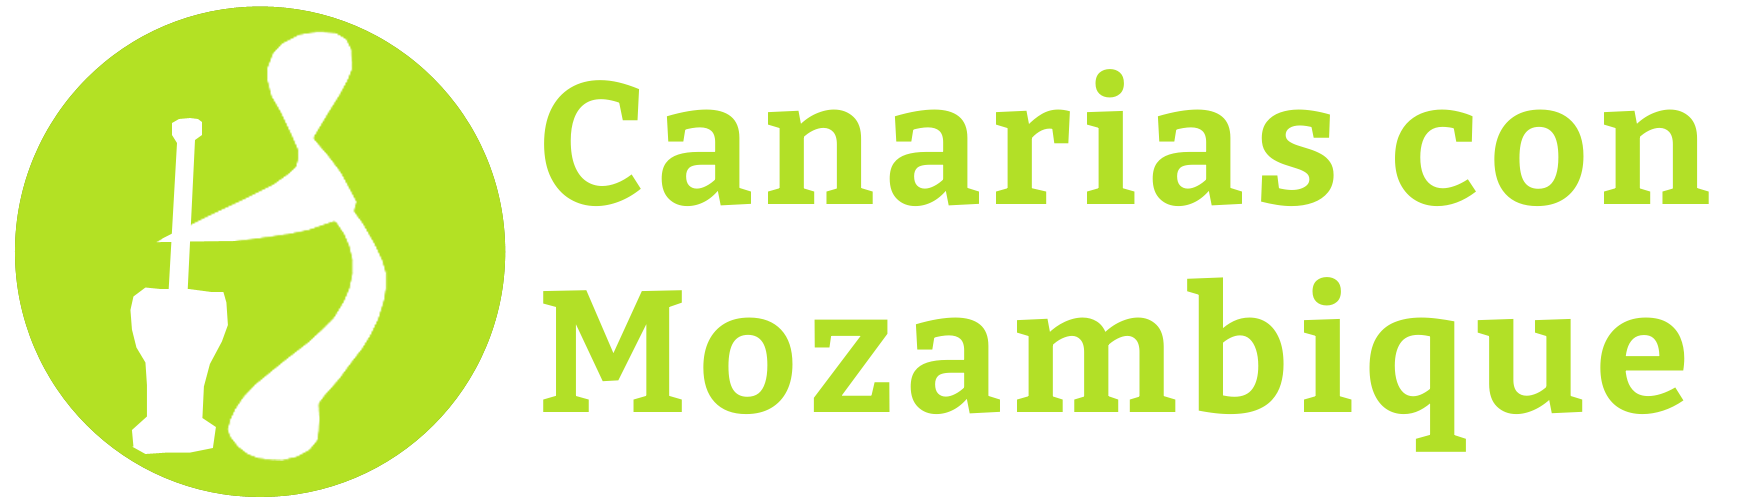 ONG Canarias con Mozambique | ONG de ayuda a Mozambqiue y otros paises empobrecidos